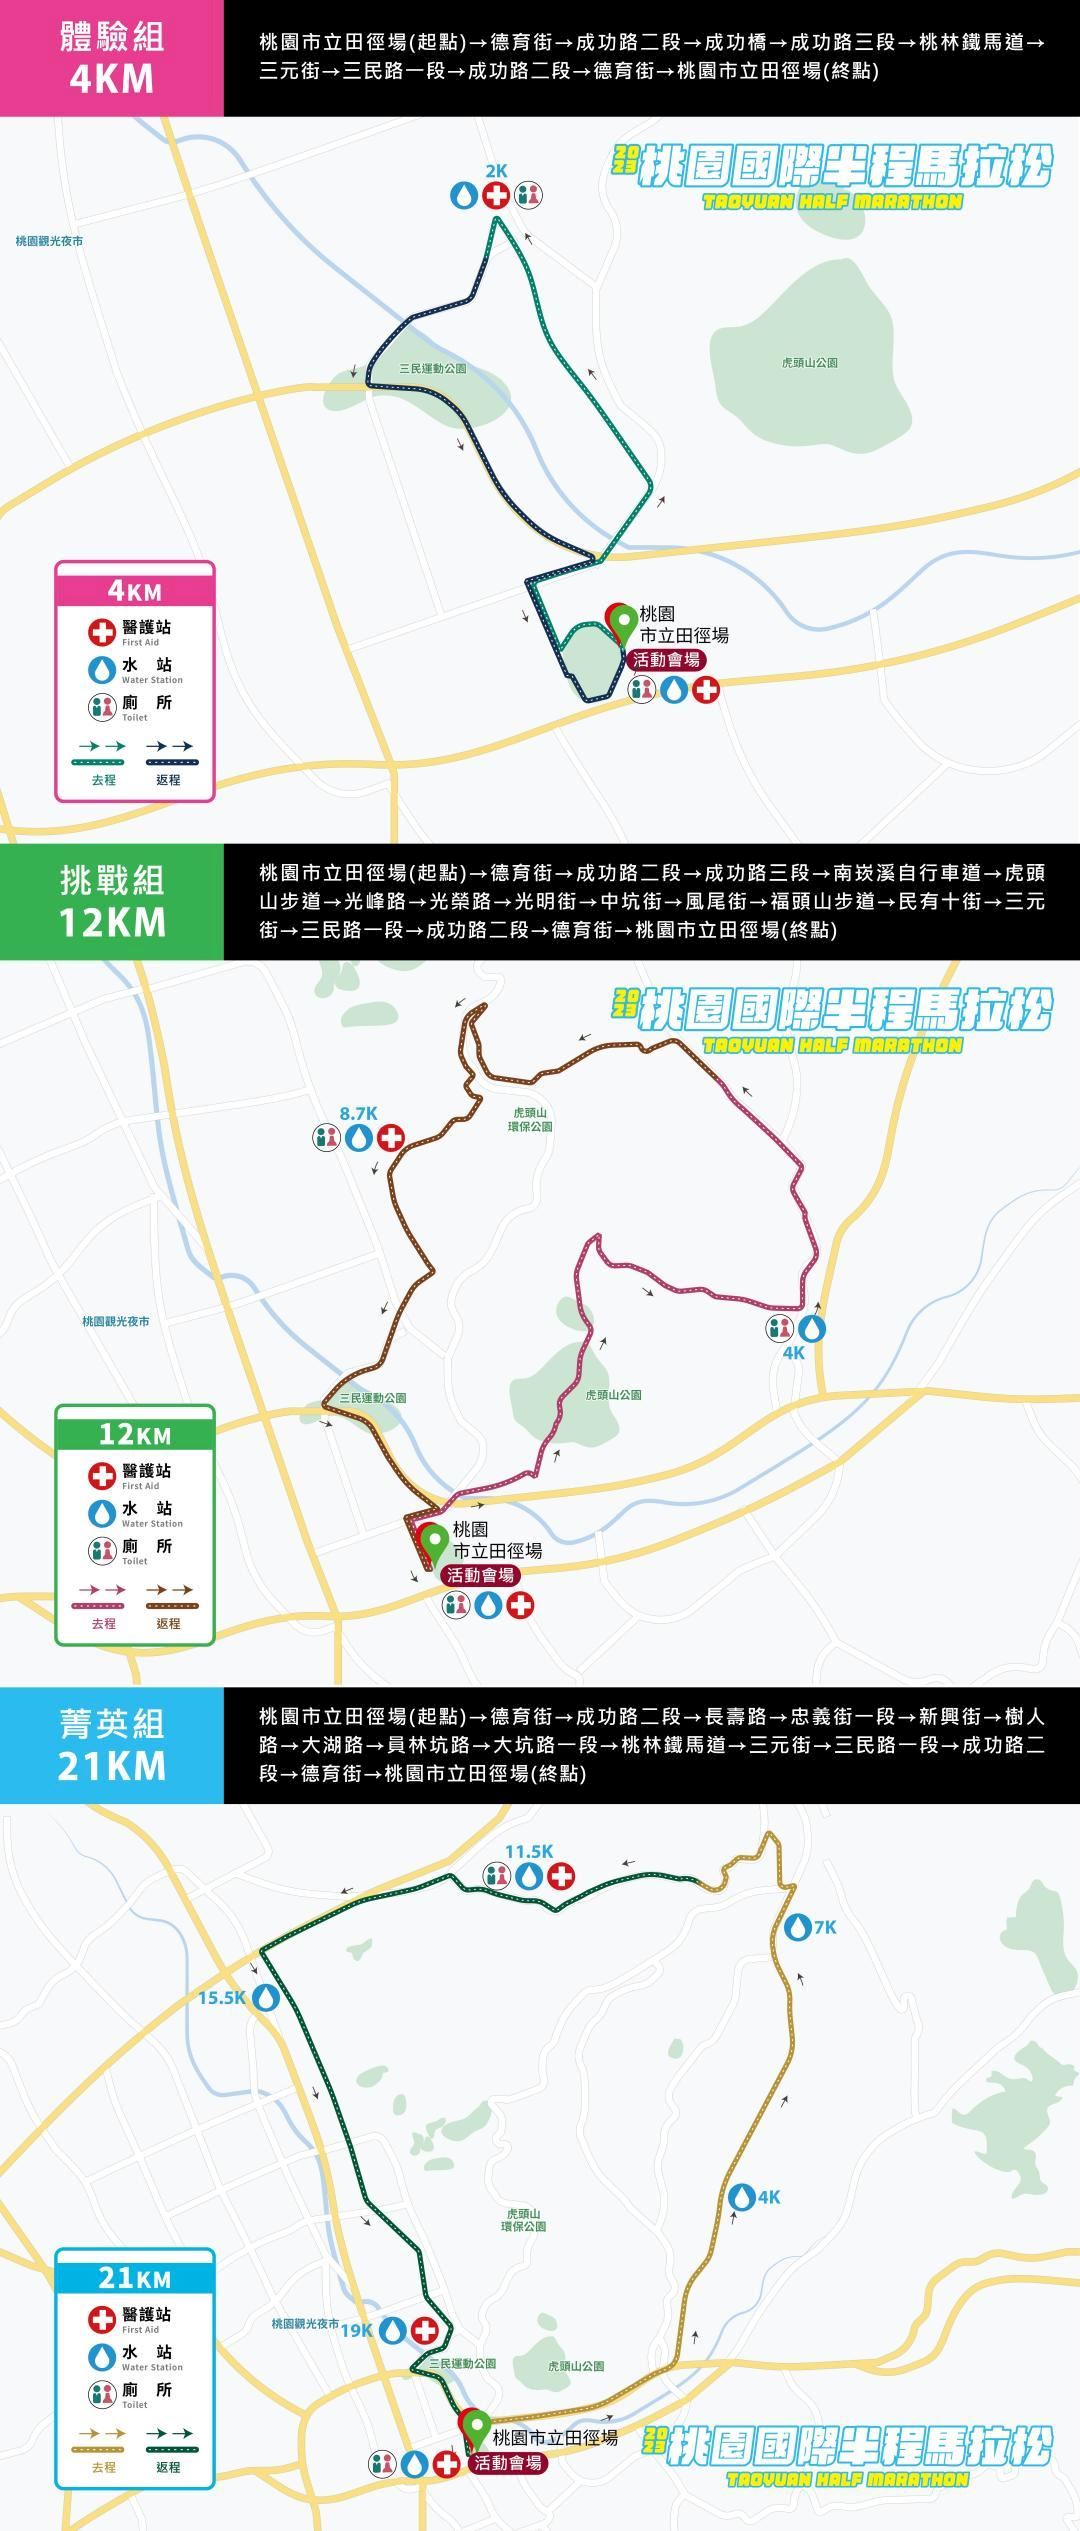 Taoyuan Half Marathon Routenkarte